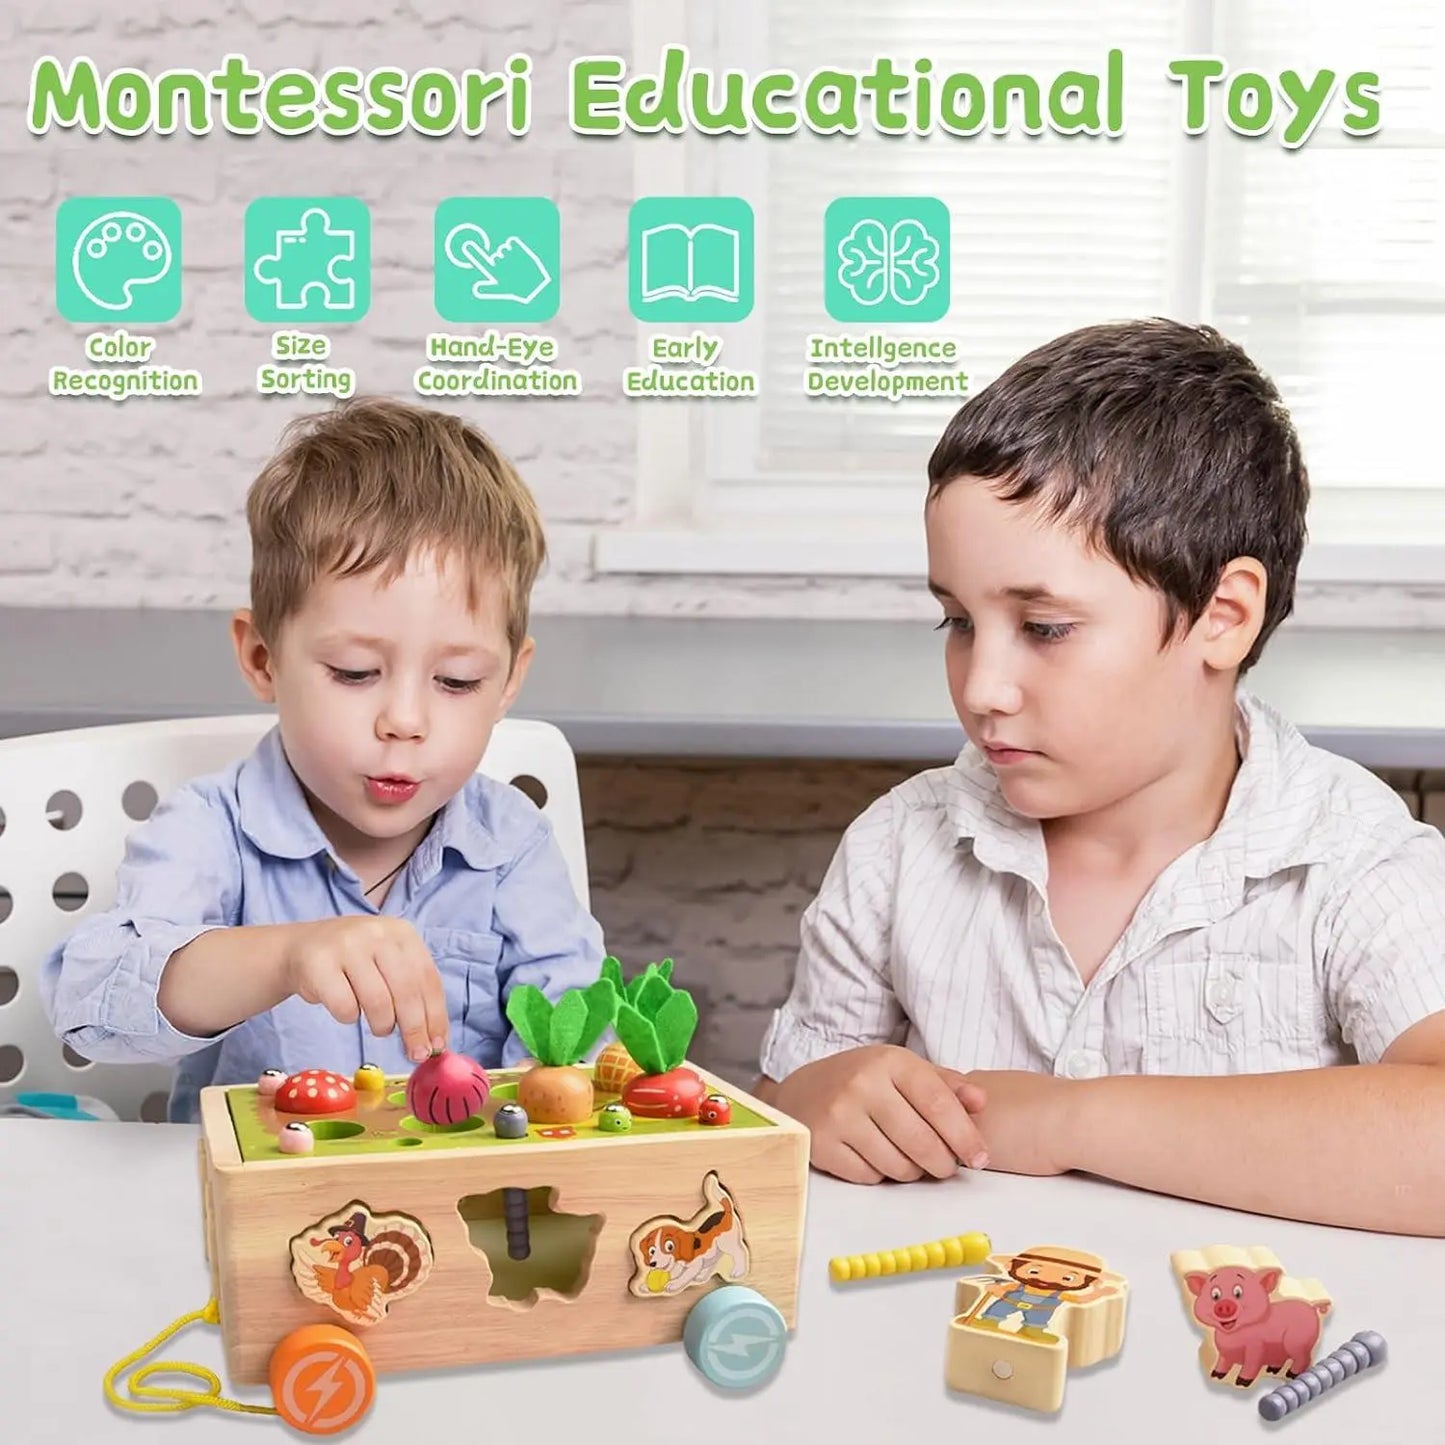 jouet pour enfant Achiyway Jeux Montessori Jouet enfant 1 2 3 4 ans Garcon Fille éducatif Jouet... gauthiersale